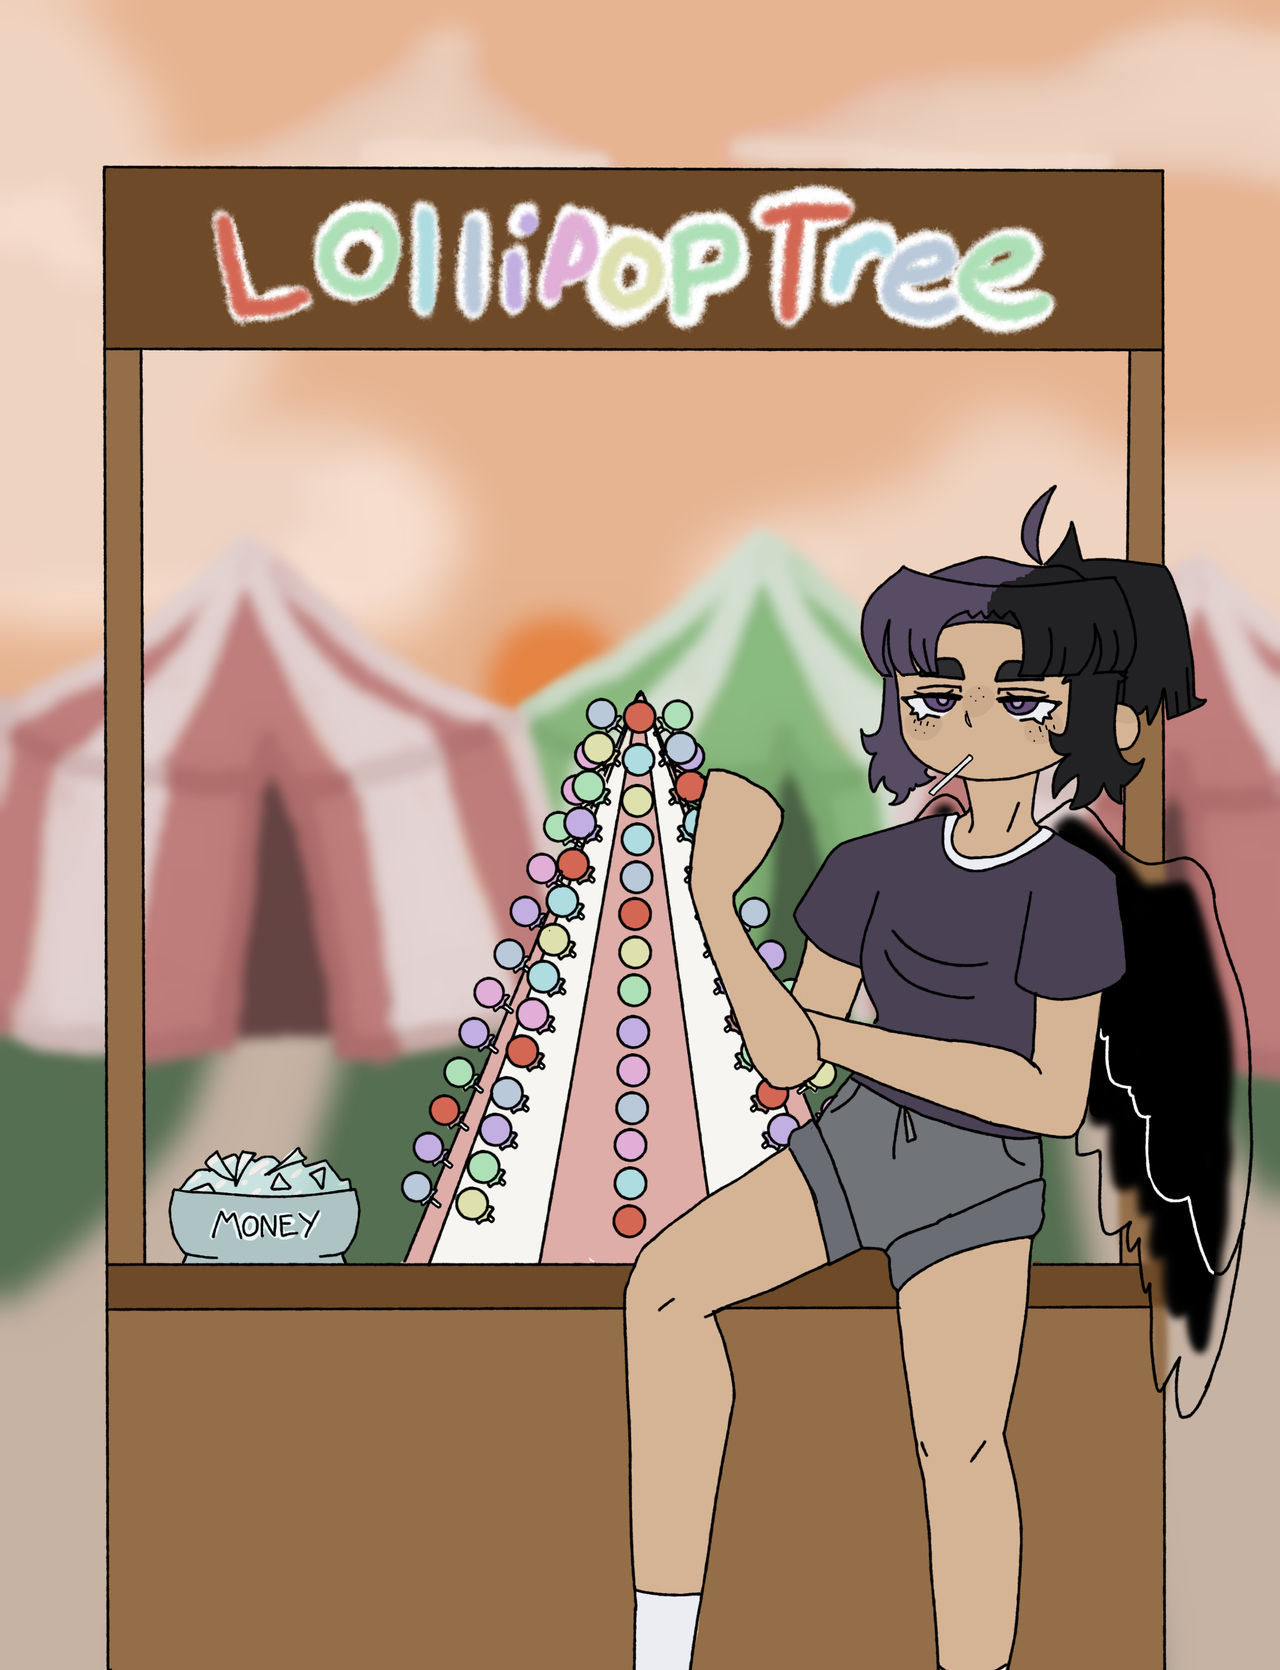 Lollipop Tree